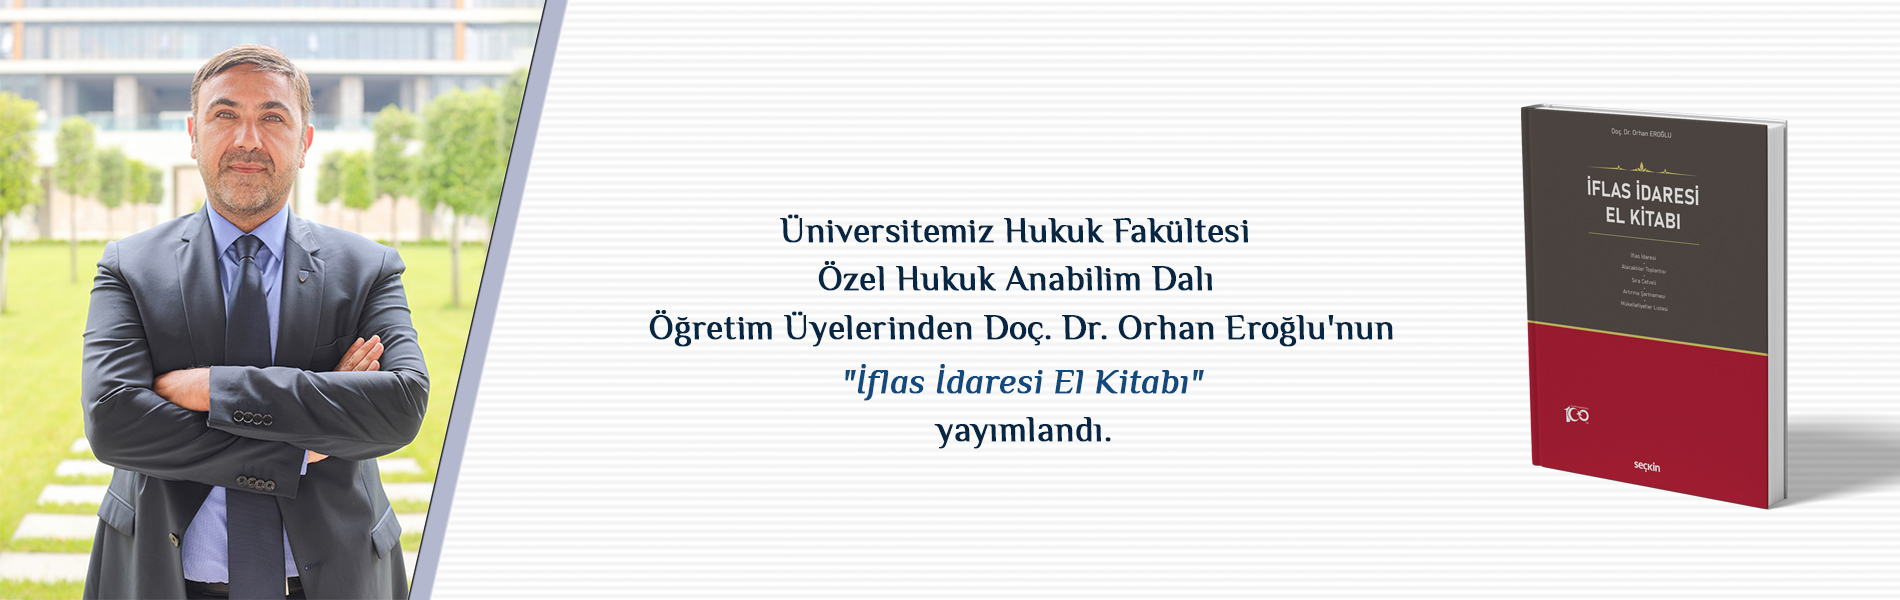 Üniversitemiz Hukuk Fakültesi Özel Hukuk Anabilim Dalı Öğretim Üyelerinden Doç. Dr. Orhan Eroğlu'nun "İflas İdaresi El Kitabı" yayımlandı.